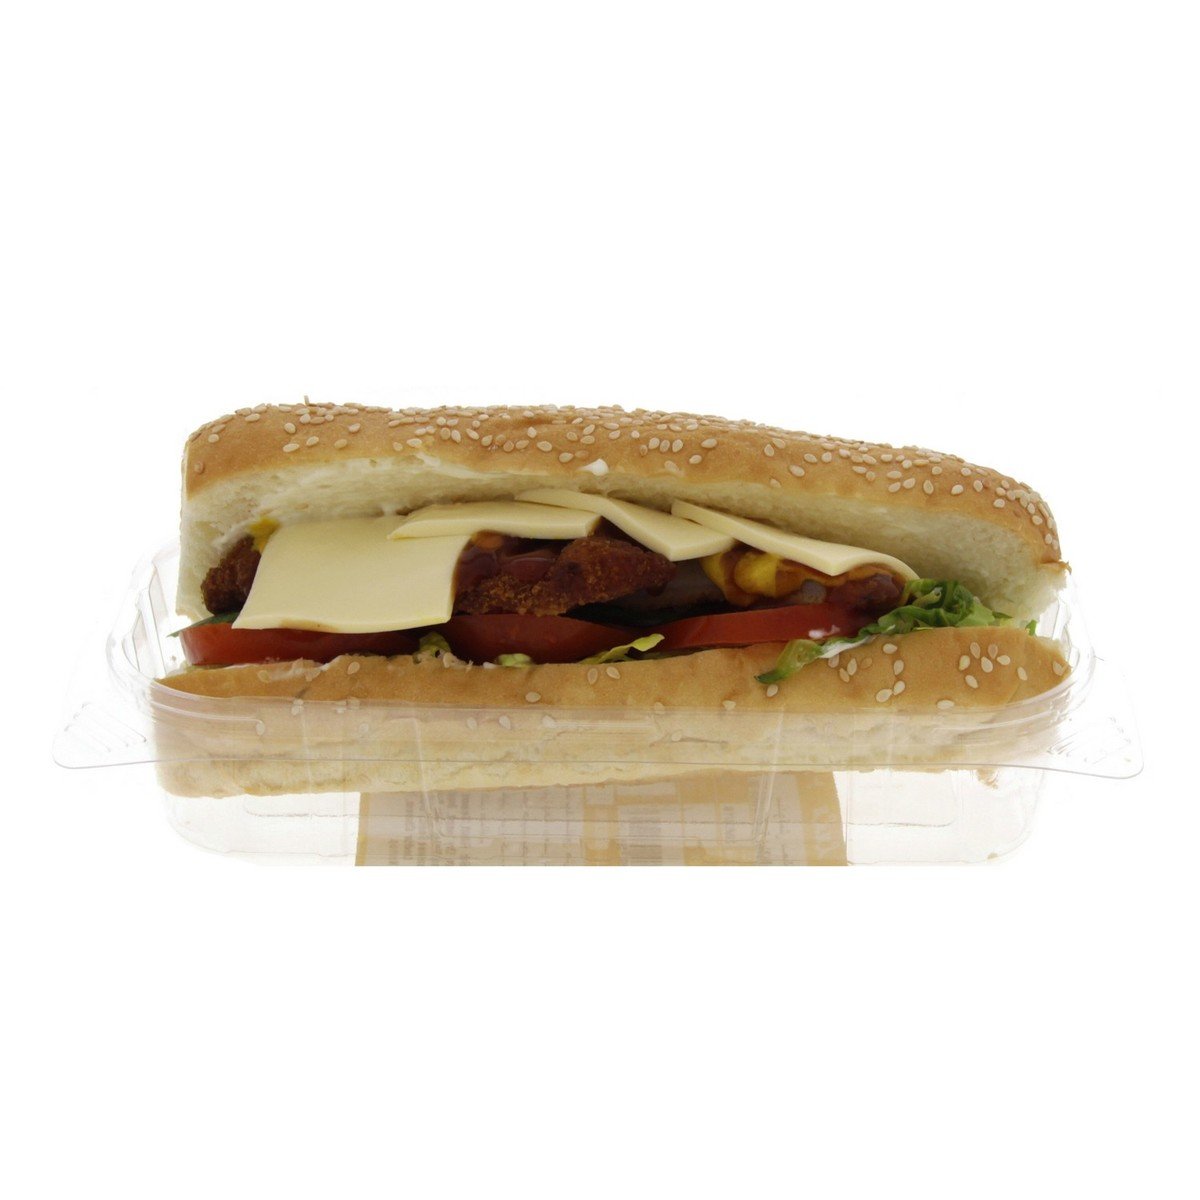 Fish Fillet Sandwich 1pc